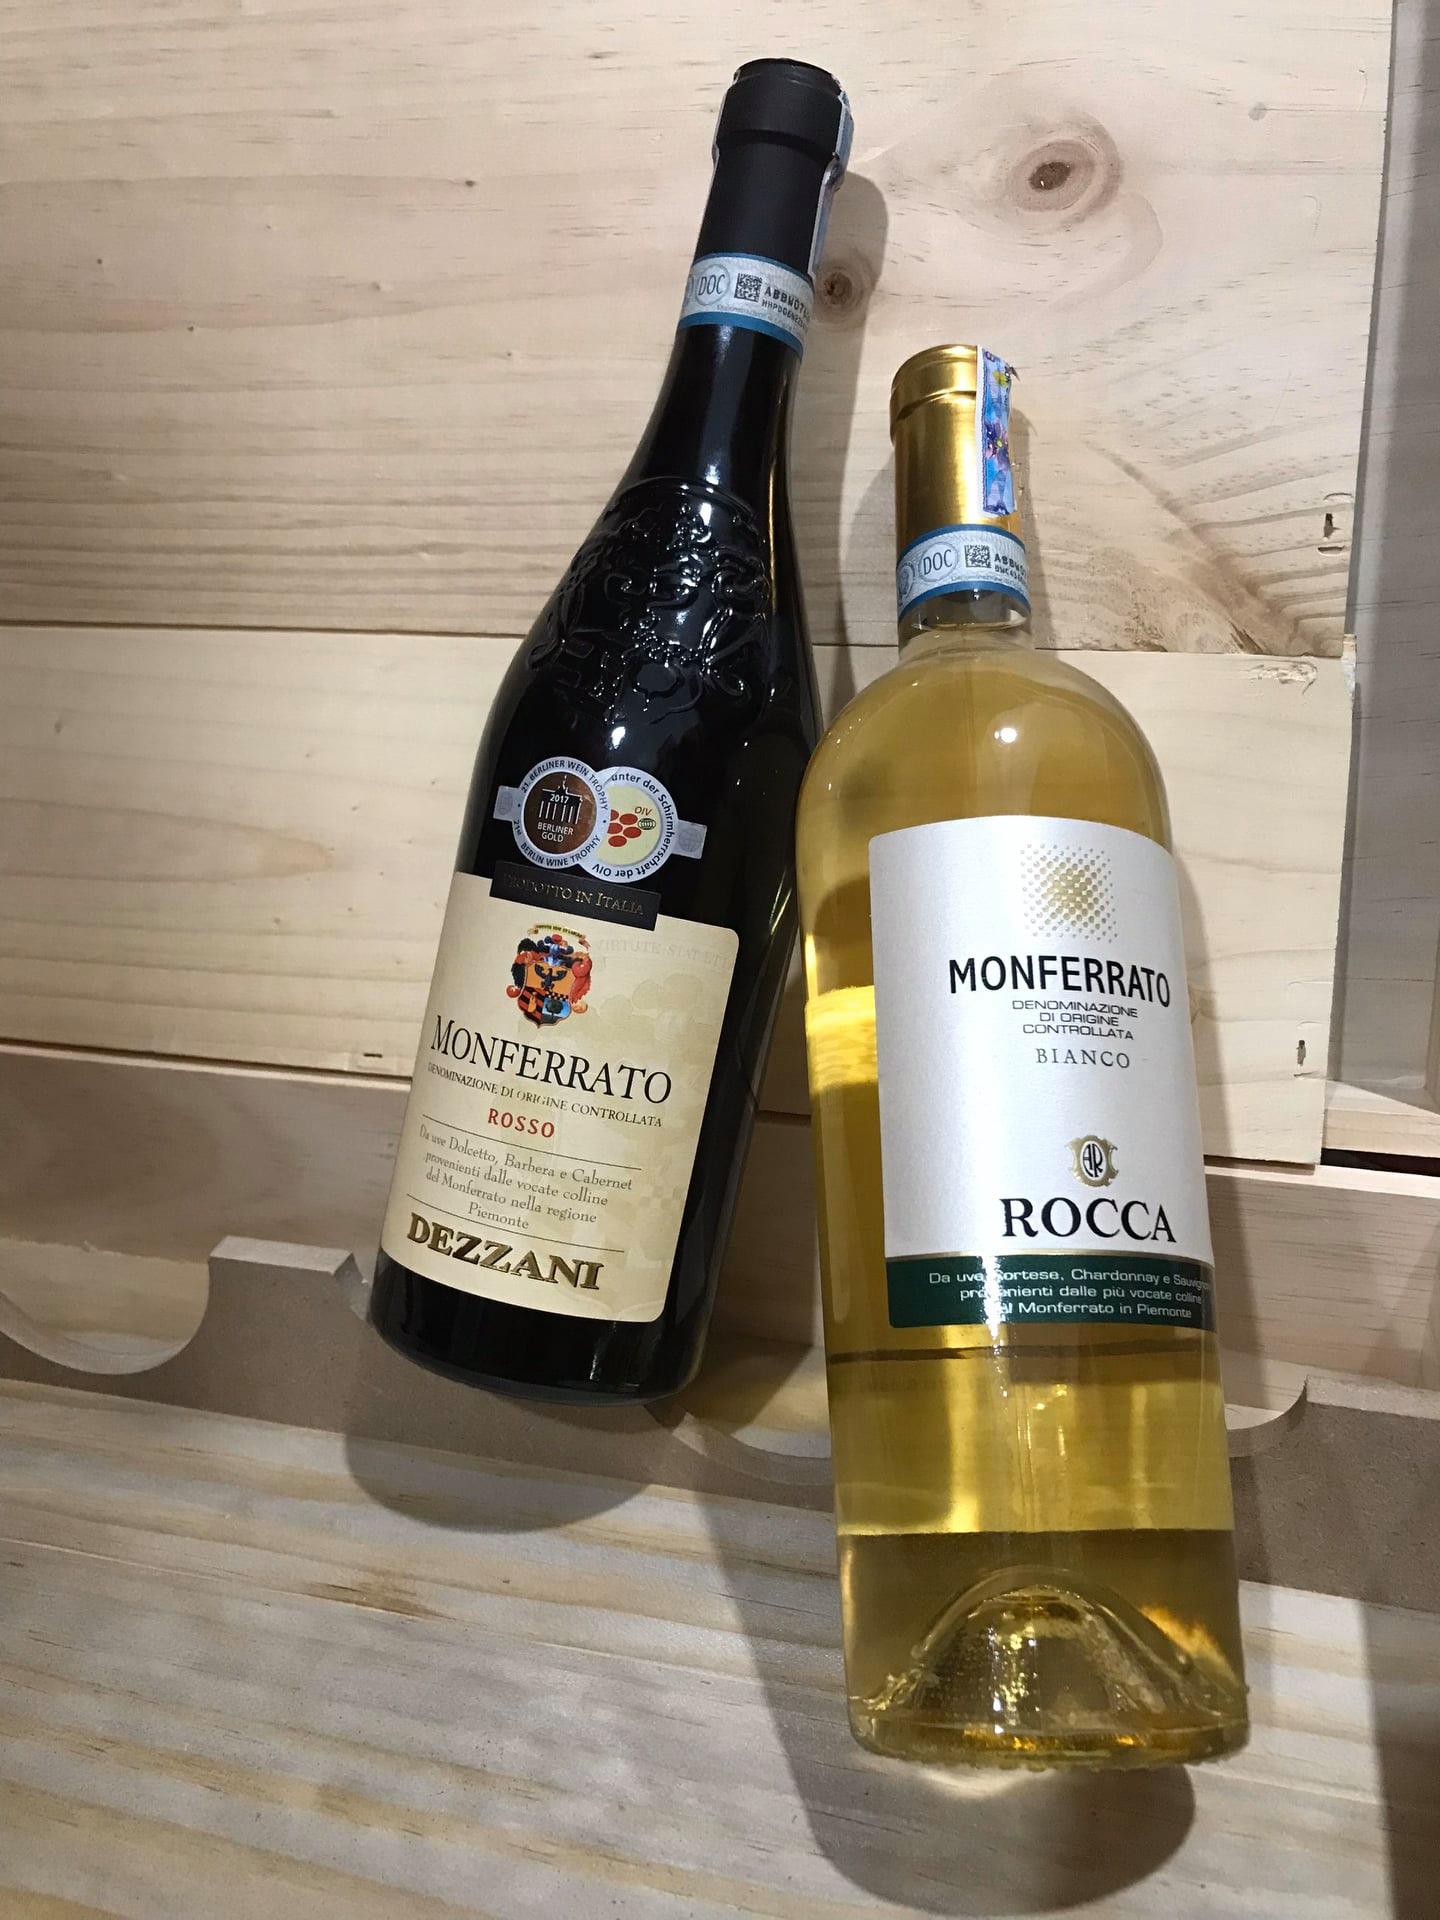 Rượu Vang Ý Monferrato Rosso Dezzani là sản phẩm của nhà sản xuất Dezzani. Dezzani là nhà sản xuất rượu vang từ năm 1934